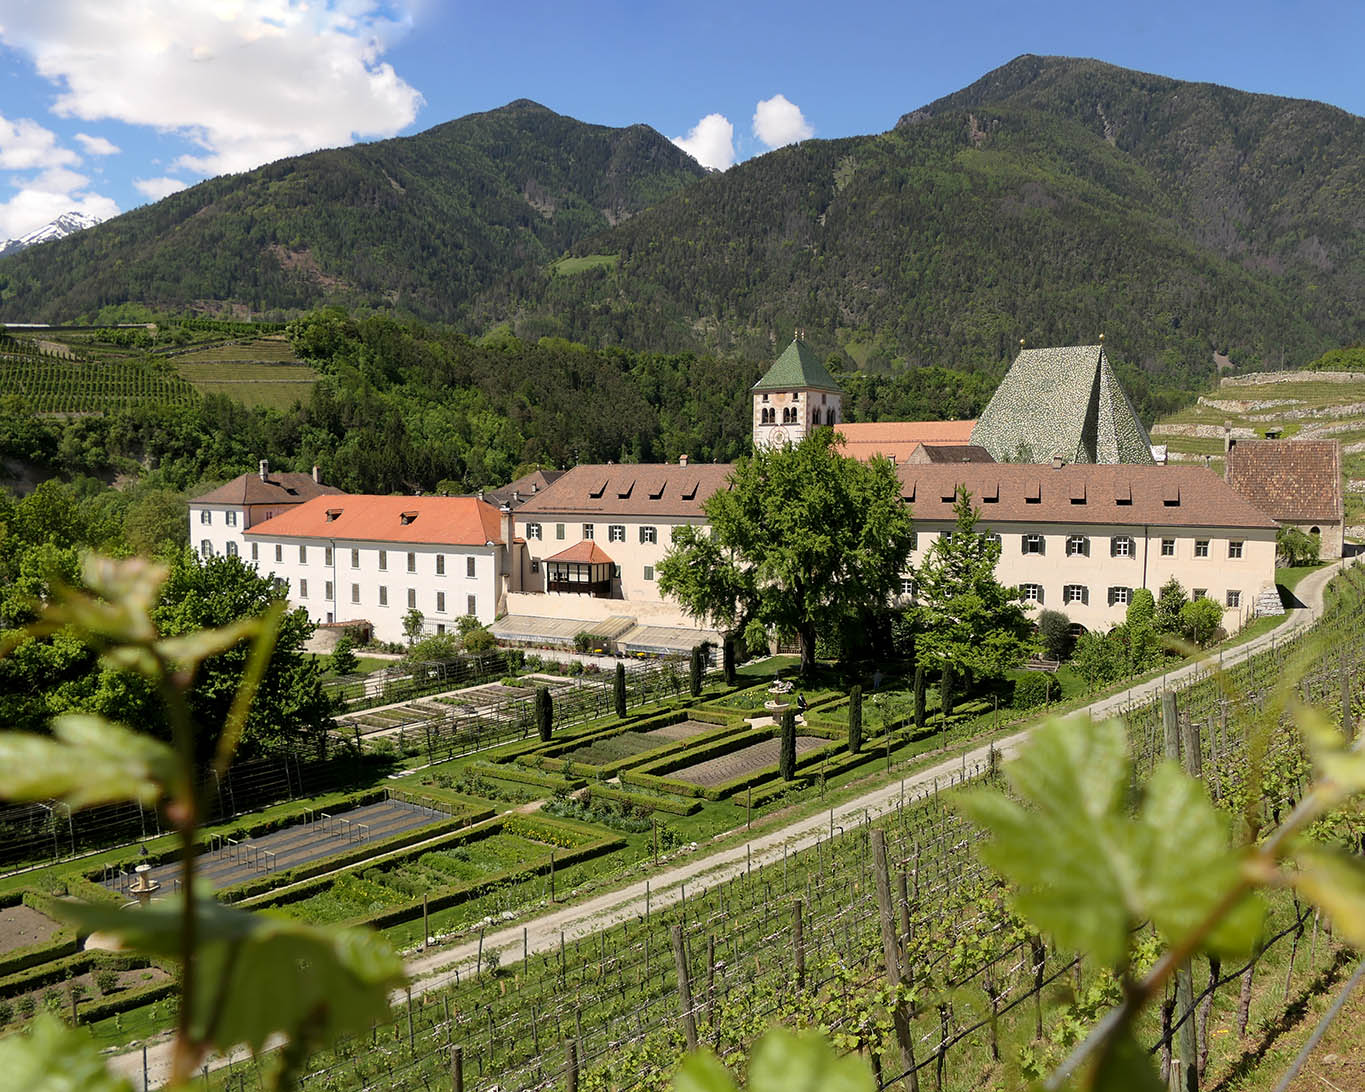 Kloster Neustift in seiner Pracht mit Bergen und Gärten.